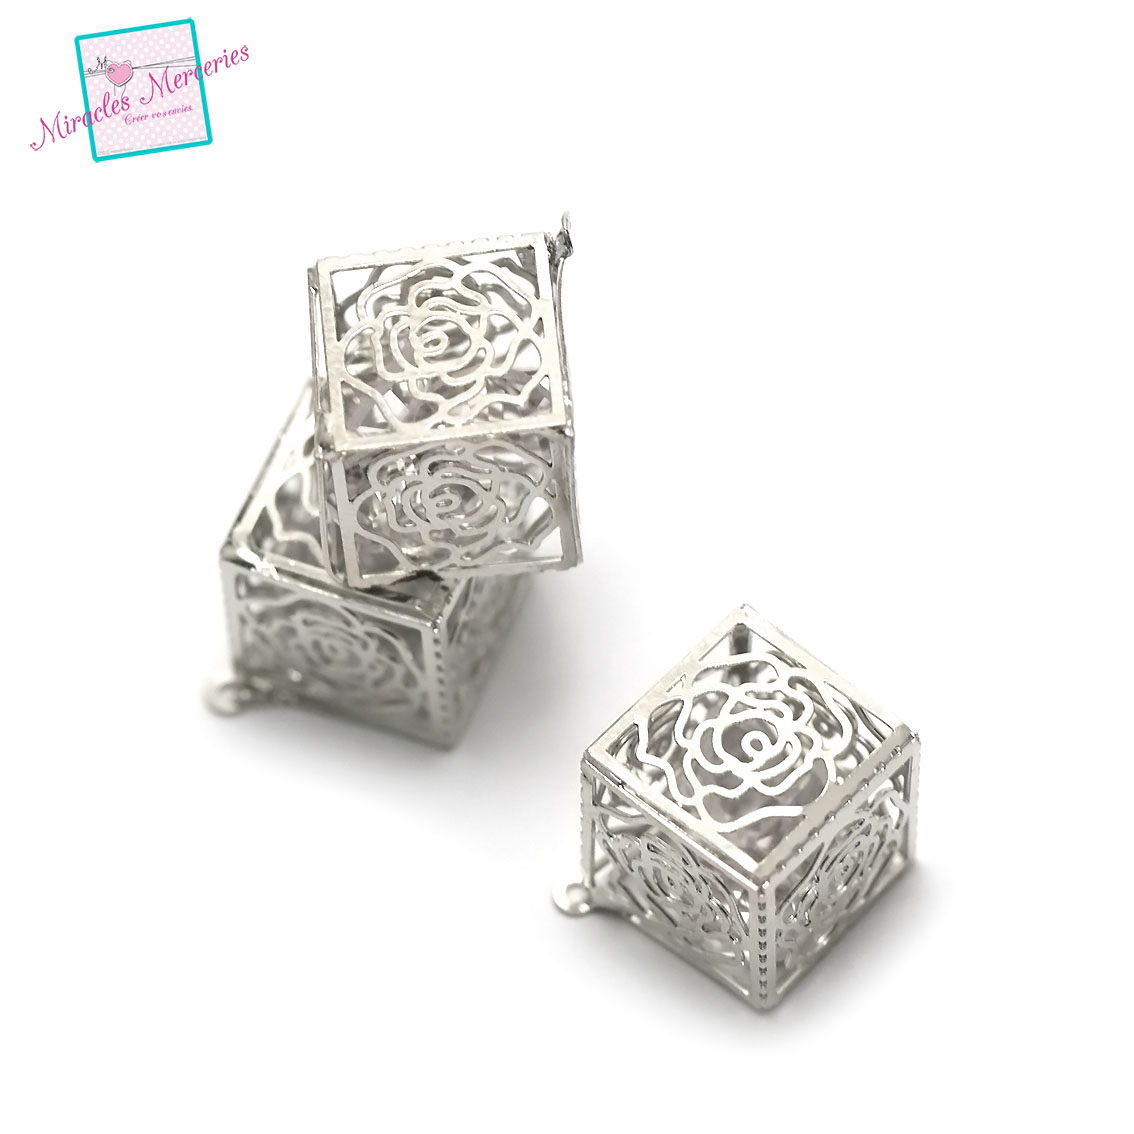 2 pendentifs cage de cristal cube filigrane13x13 mm,argenté